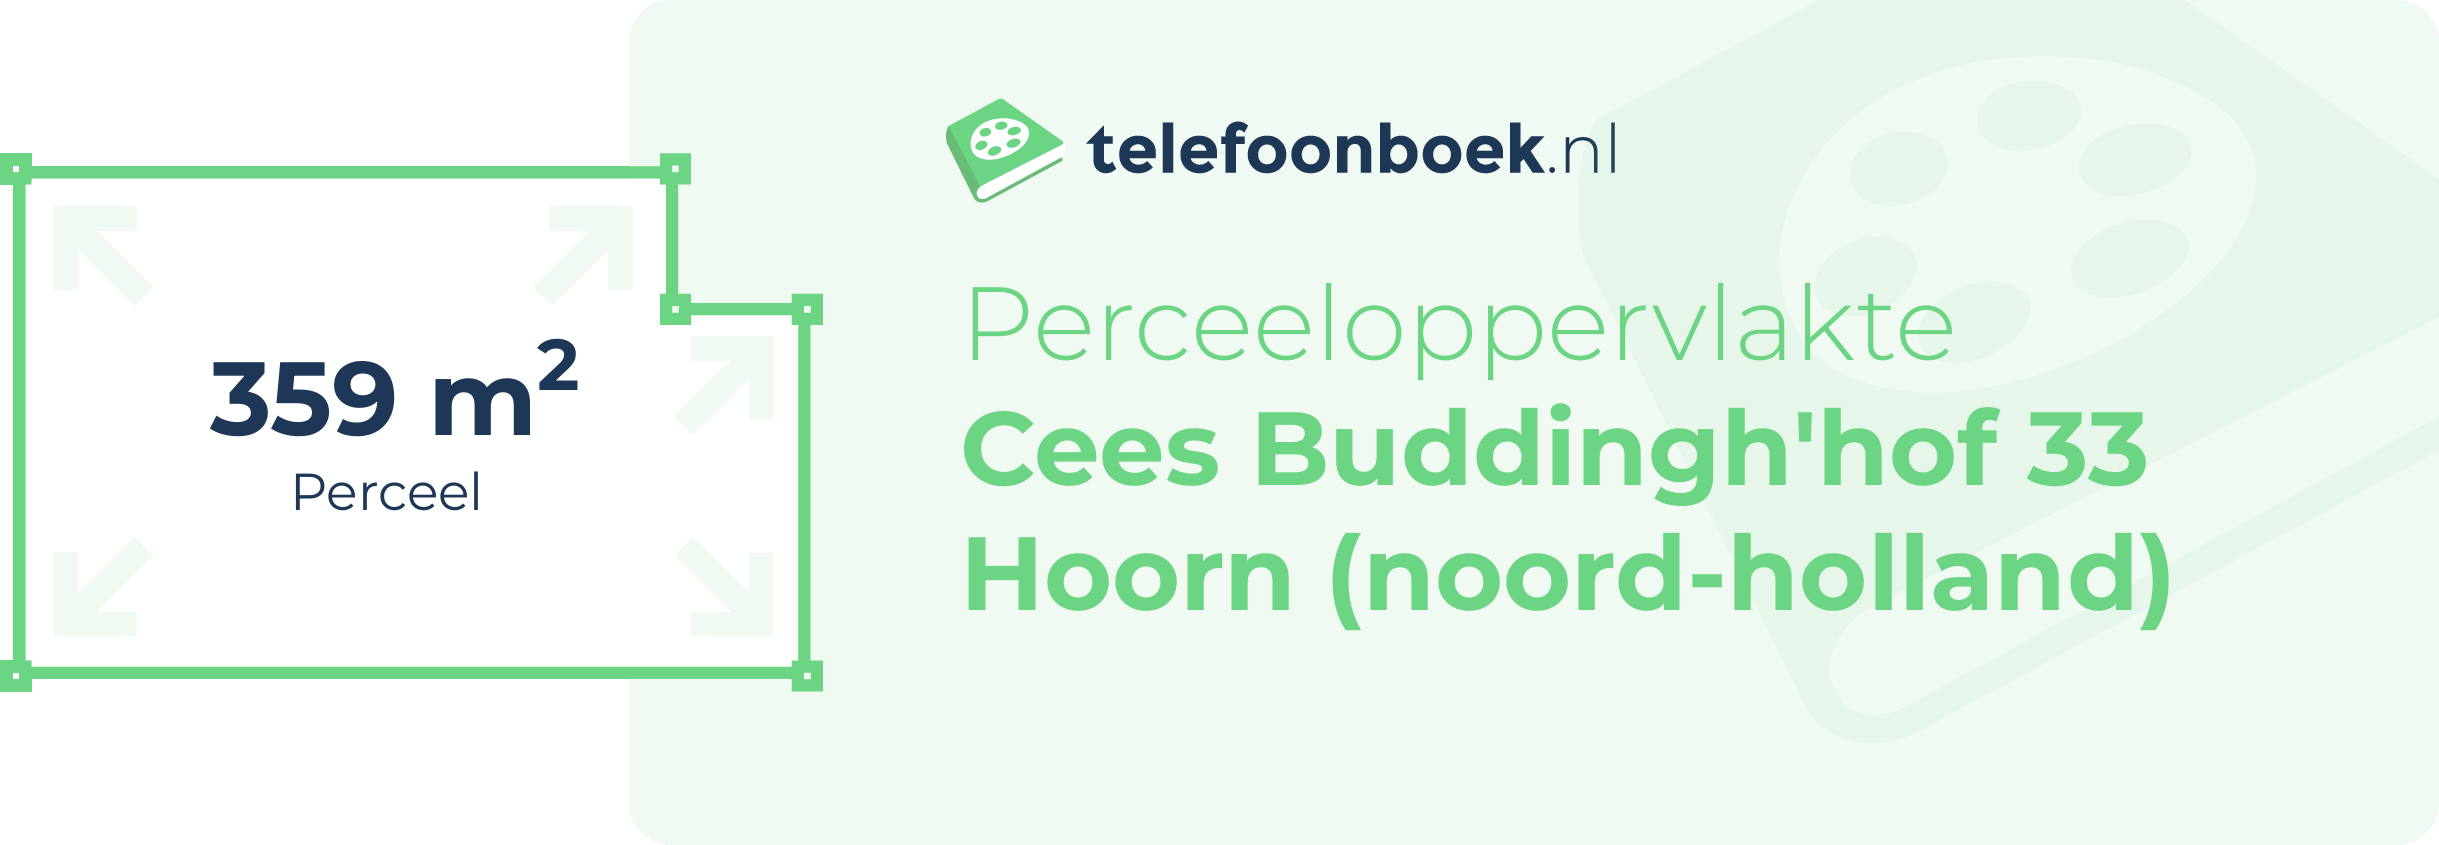 Perceeloppervlakte Cees Buddingh'hof 33 Hoorn (Noord-Holland)